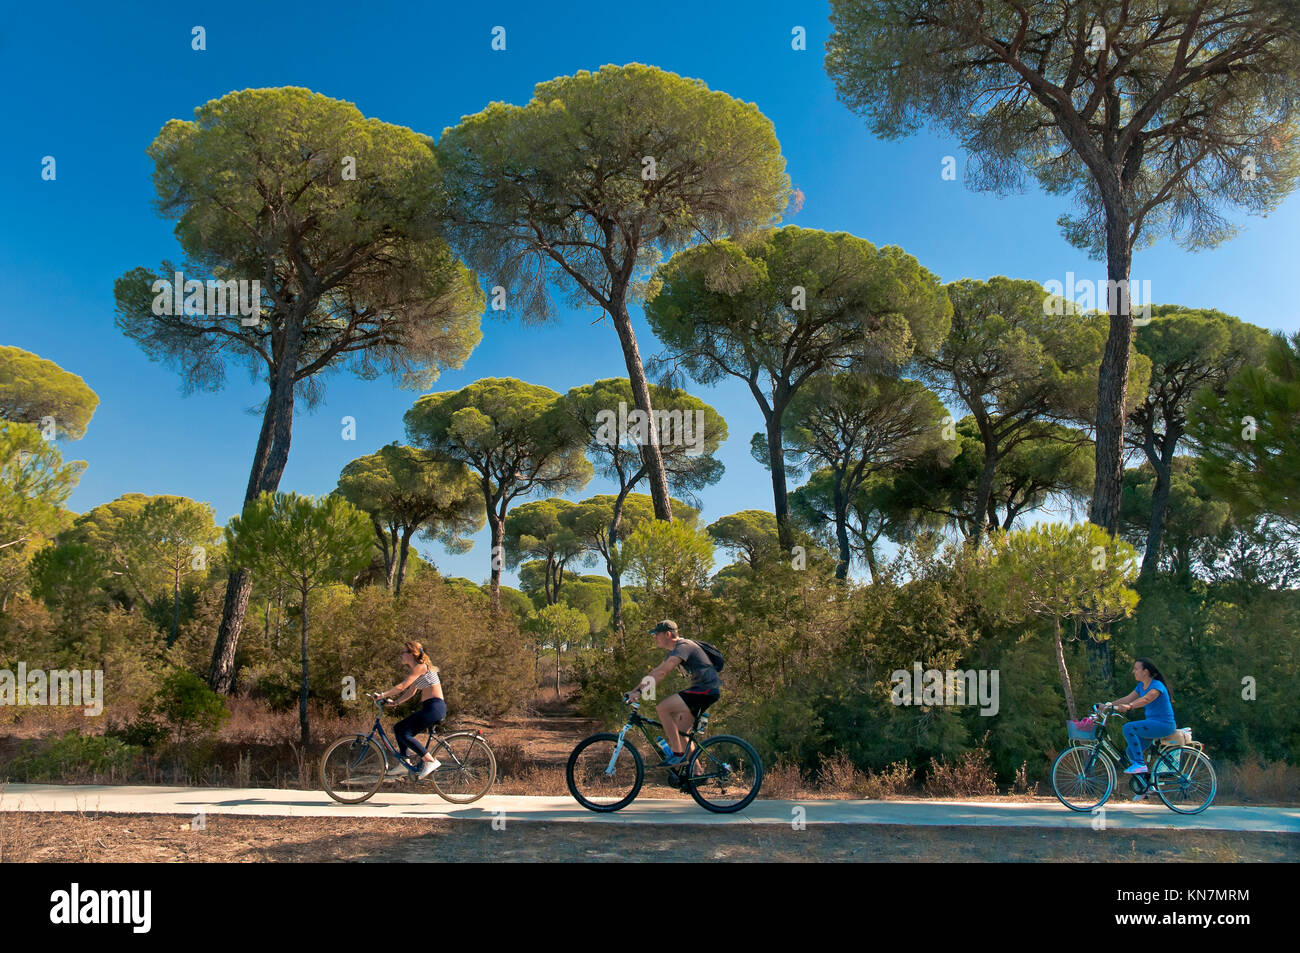 Los ciclistas en el carril bici del Pinar de la Algaida, Parque Natural de  Doñana, Sanlúcar de Barrameda, provincia de Cádiz, región de Andalucía,  España, Europa Fotografía de stock - Alamy